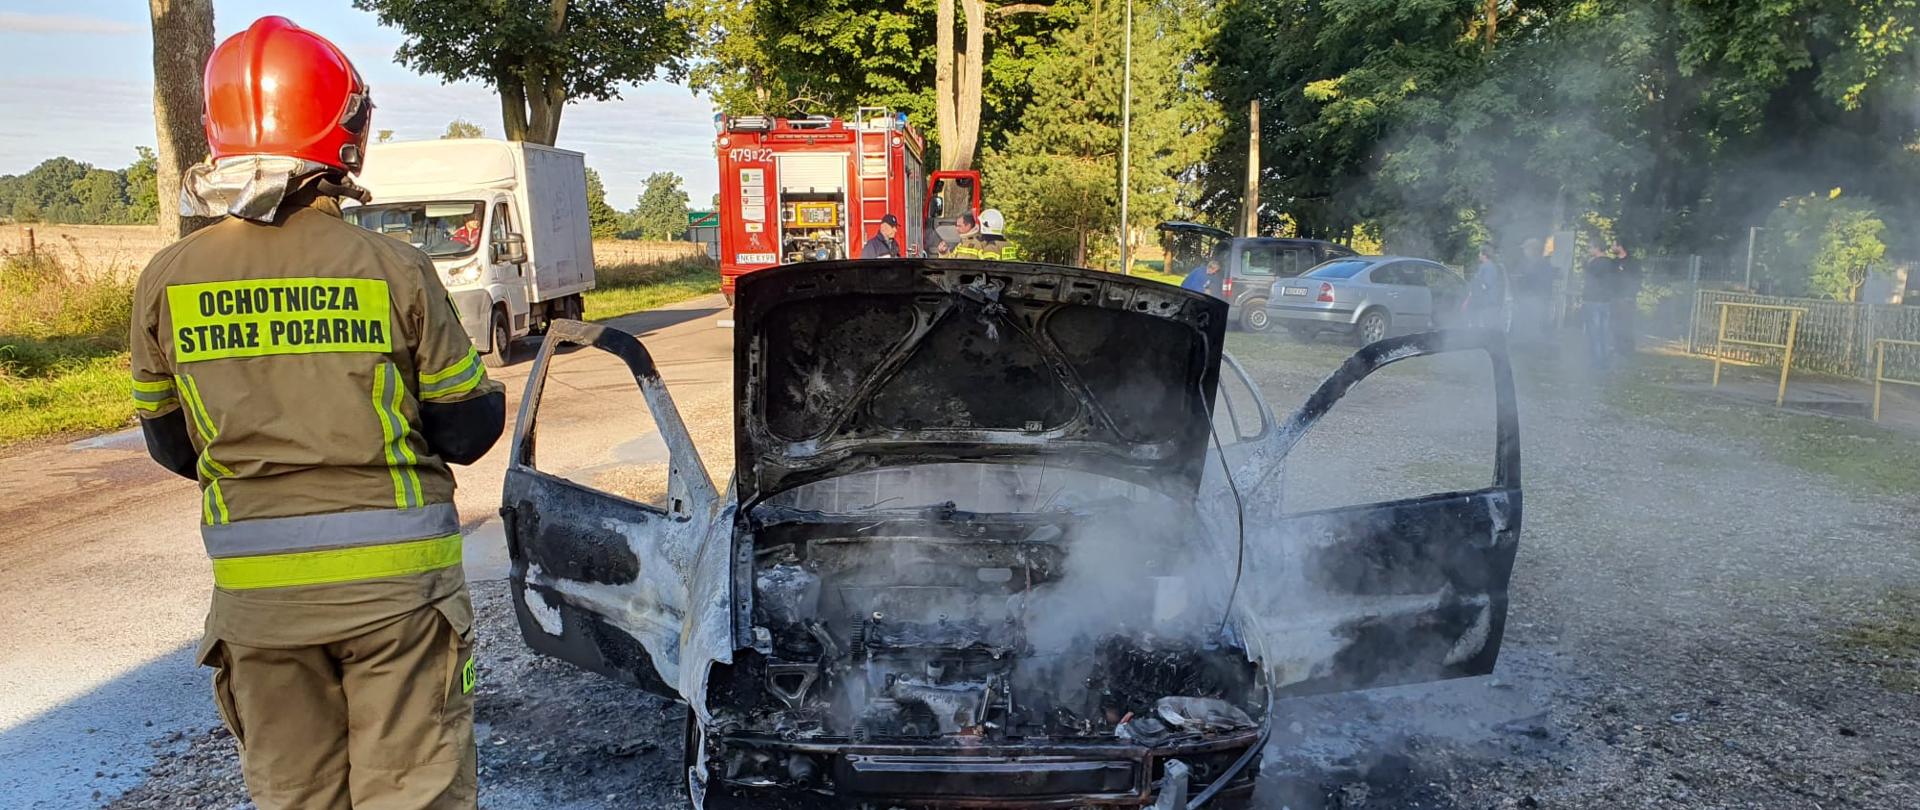 Zdjęcie przedstawia miejsce zdarzenia- spalony samochód osobowy oraz strażaka ubranego w piaskowe ubranie specjalne oraz czerwony hełm. W tle inne samochody oraz czerwony wóz bojowy.